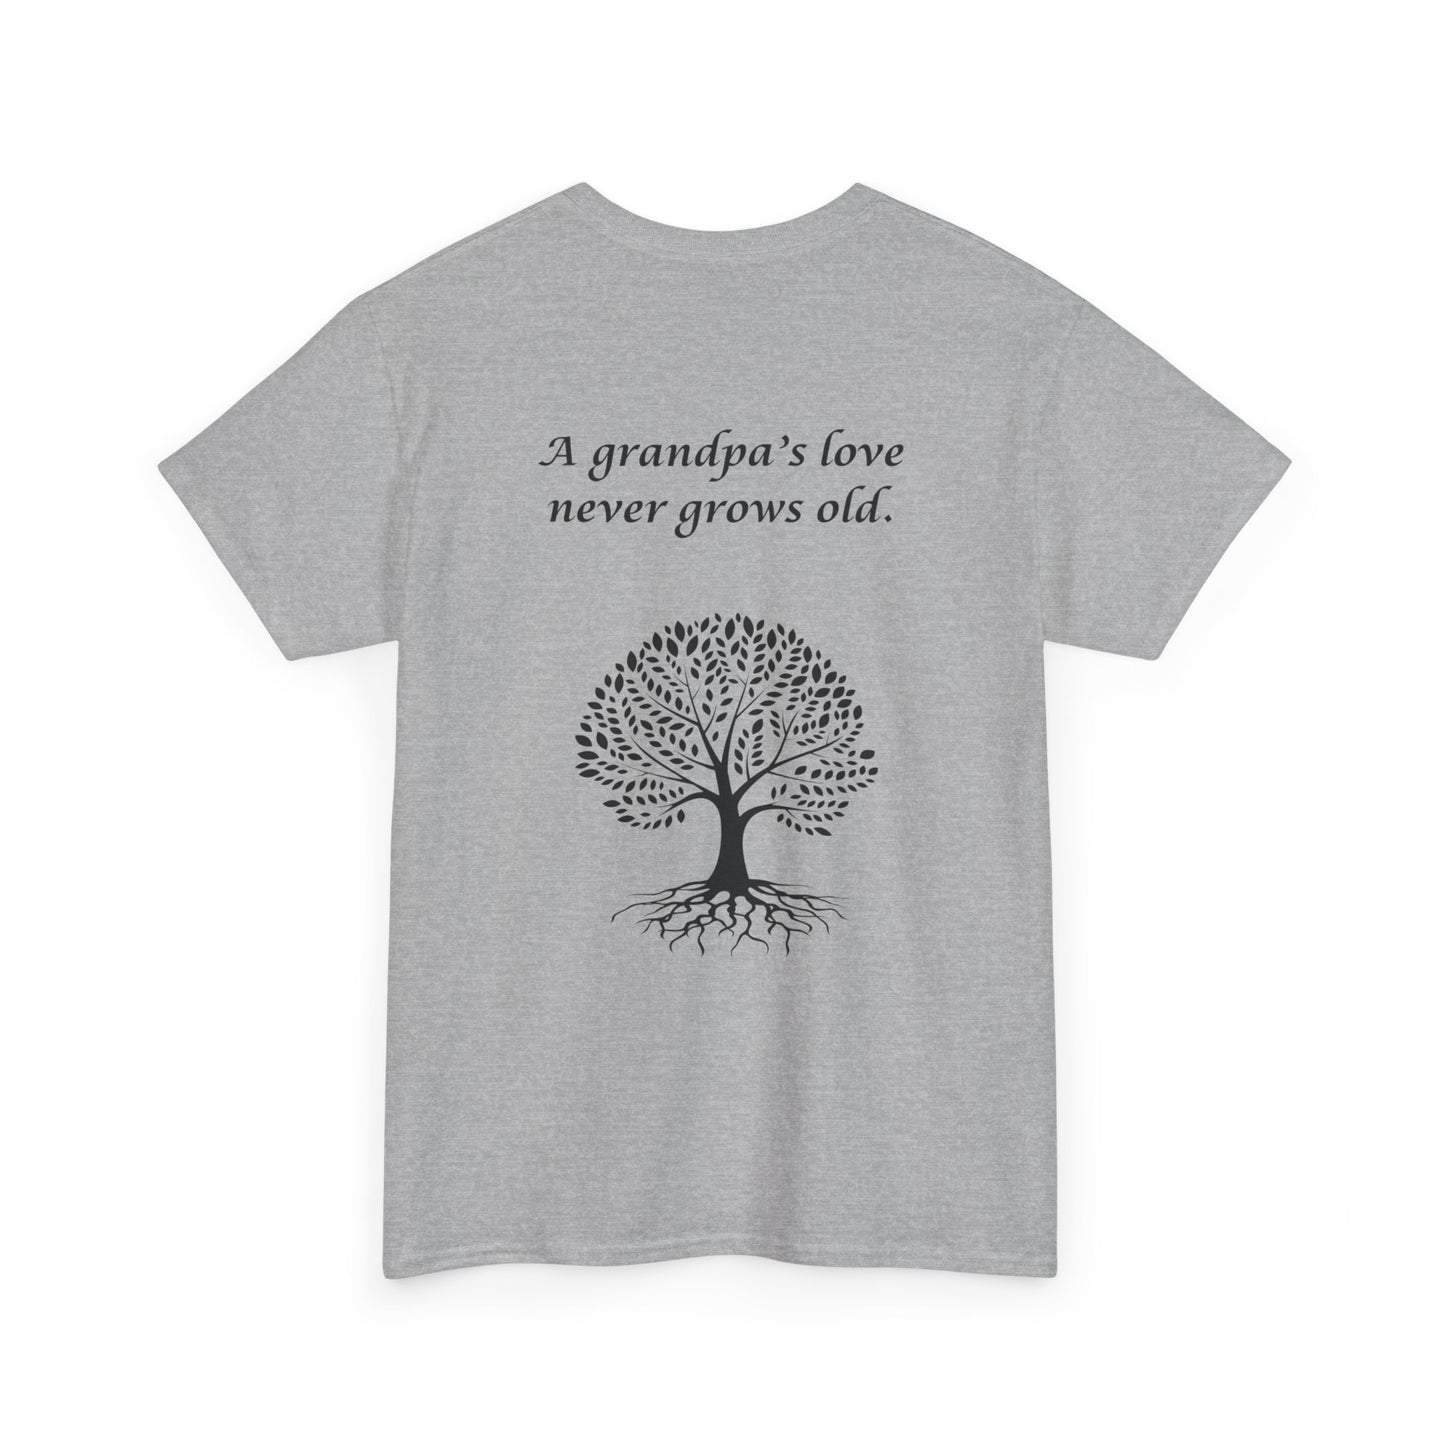 Feiern Sie den Vatertag mit einem personalisierten Shirt für den besten Papa! Dieses personalisierte Geschenk ist perfekt für Opas und zeigt, dass er zum Opa befördert wurde. 